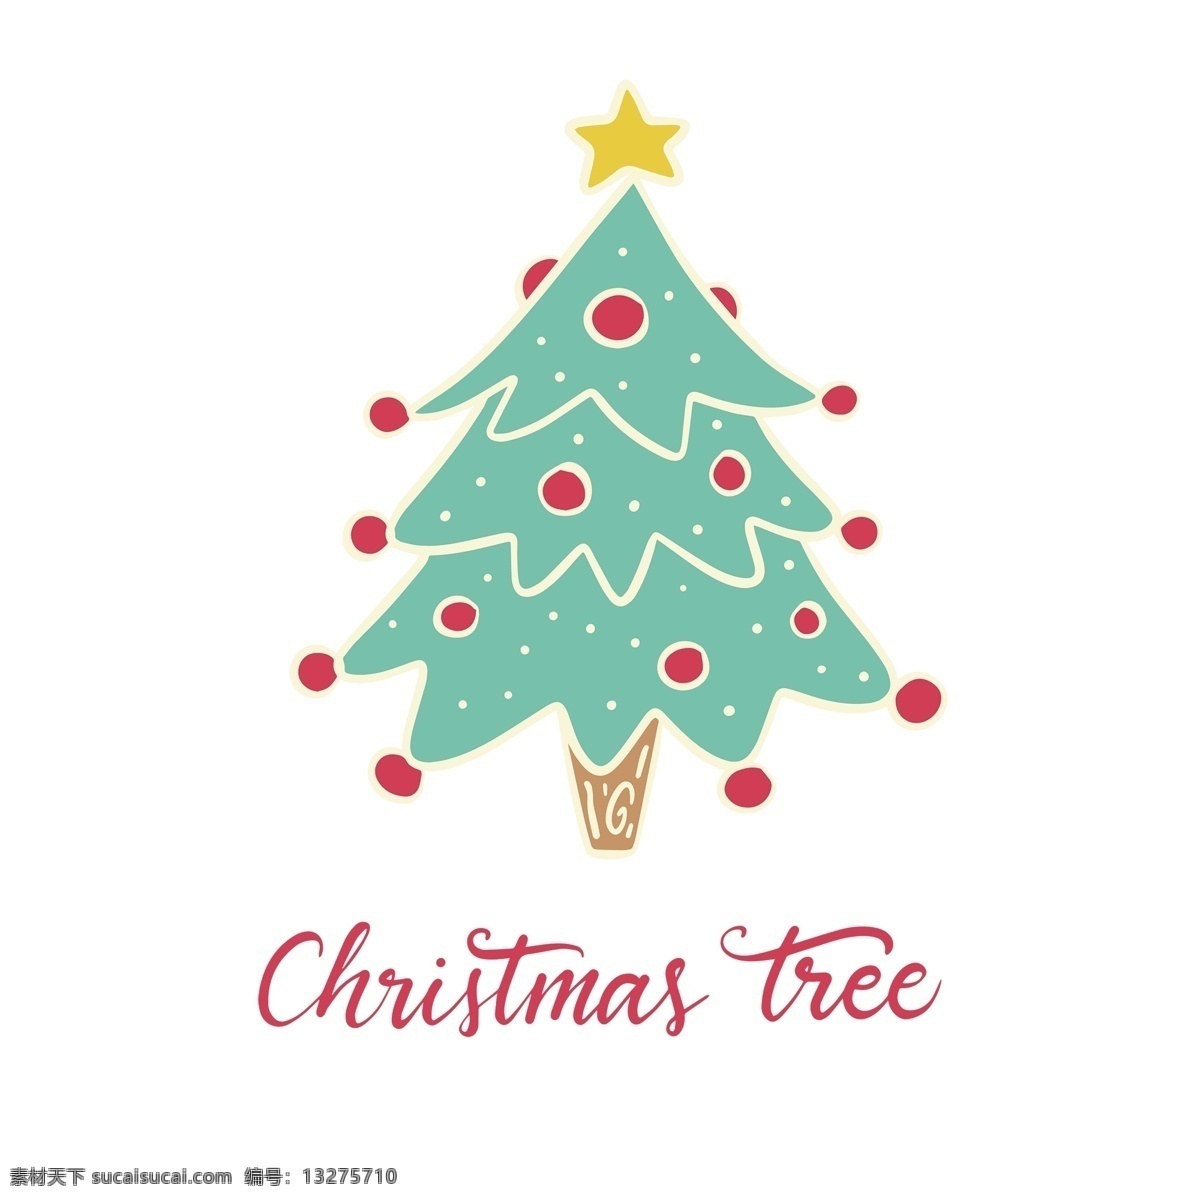 浅蓝色 卡通 圣诞树 免 抠 透明 图 圣诞树装饰图 圣诞树元素 圣诞节树 圣诞元素 节日元素